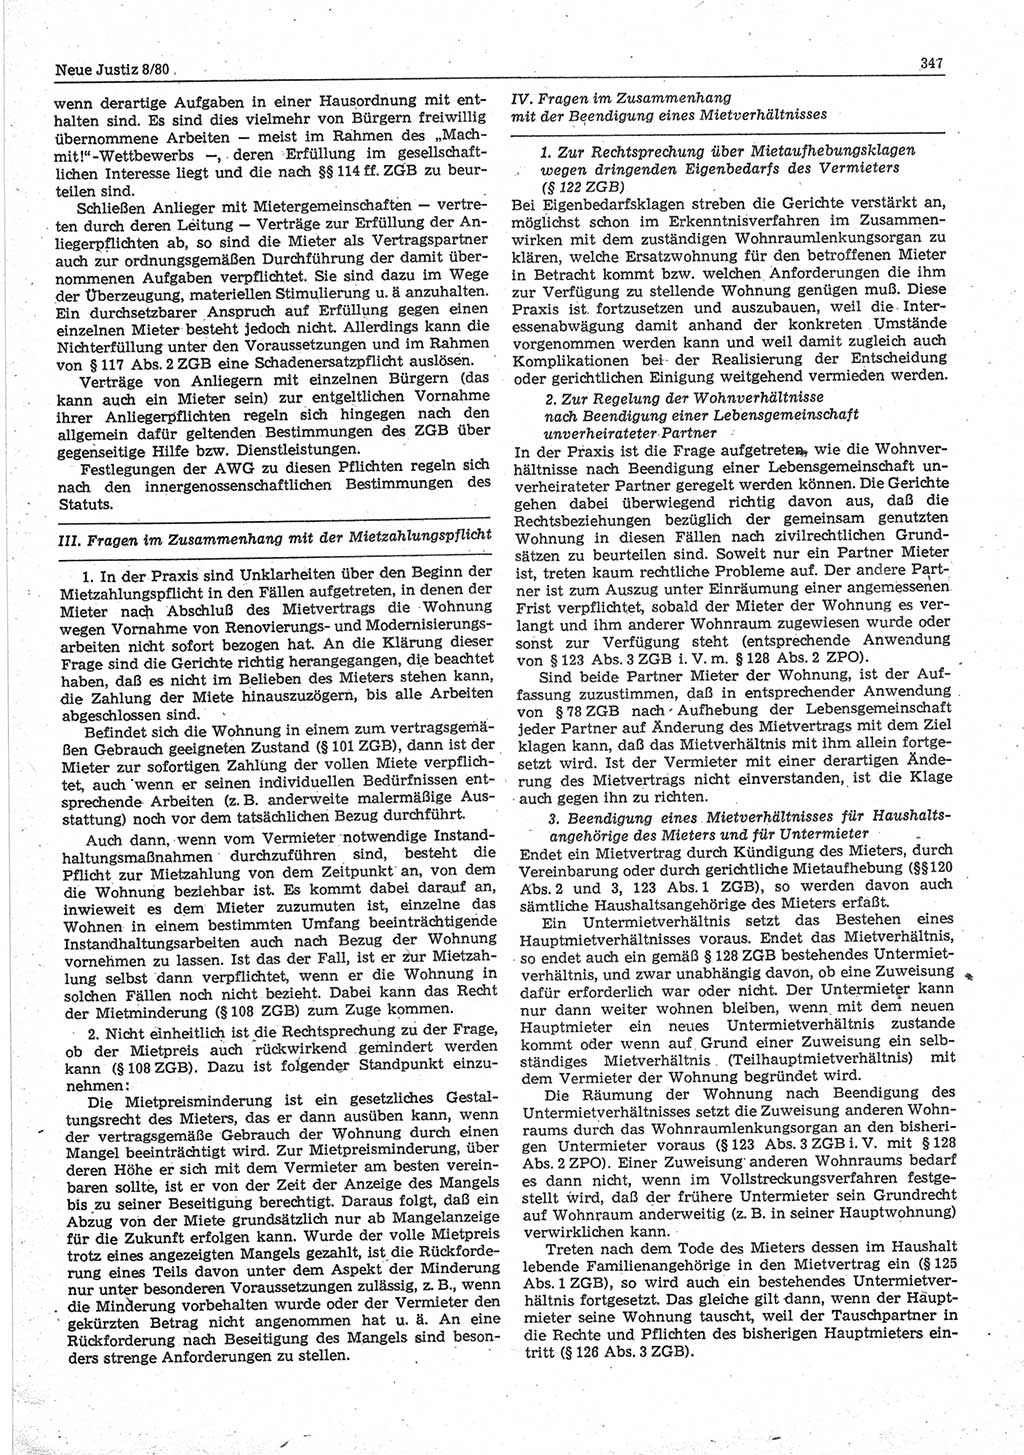 Neue Justiz (NJ), Zeitschrift für sozialistisches Recht und Gesetzlichkeit [Deutsche Demokratische Republik (DDR)], 34. Jahrgang 1980, Seite 347 (NJ DDR 1980, S. 347)